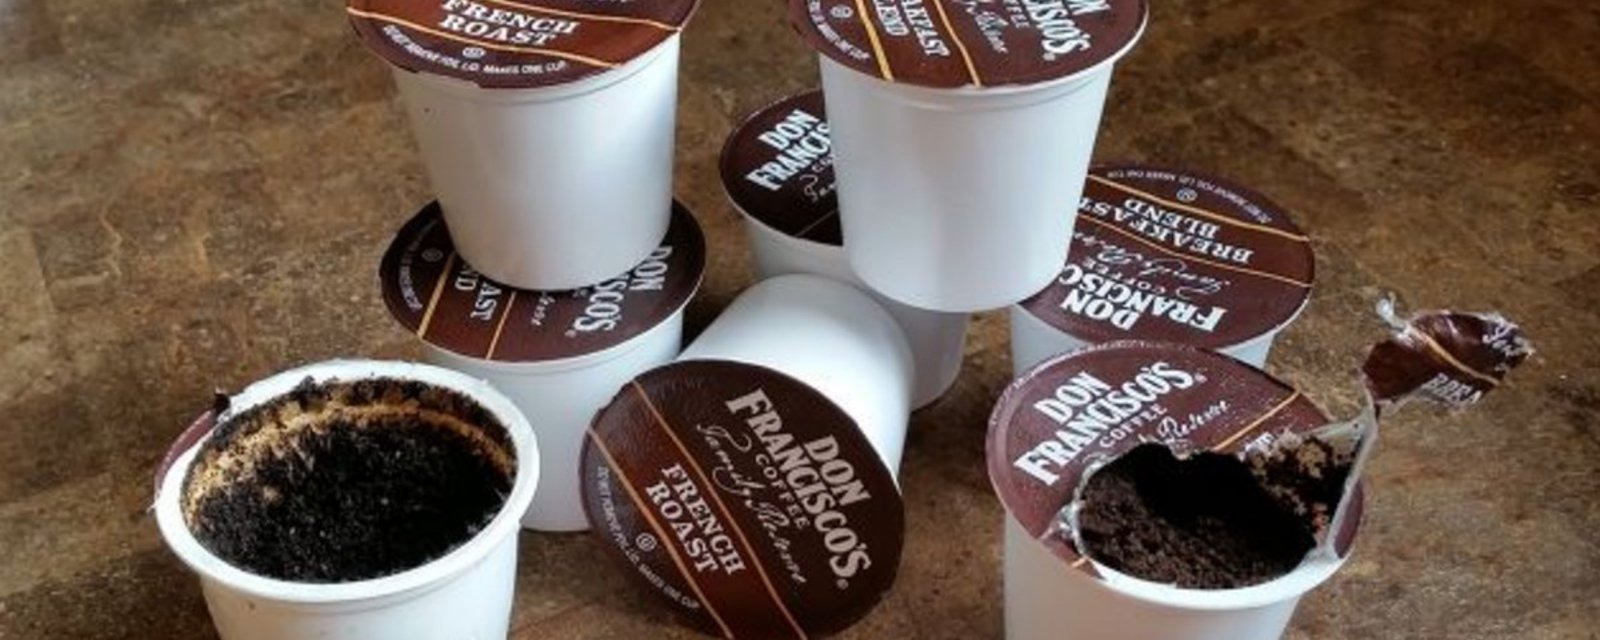 Jetez-vous vos capsules de café K-cup après leur utilisation? C’est une erreur que beaucoup font!